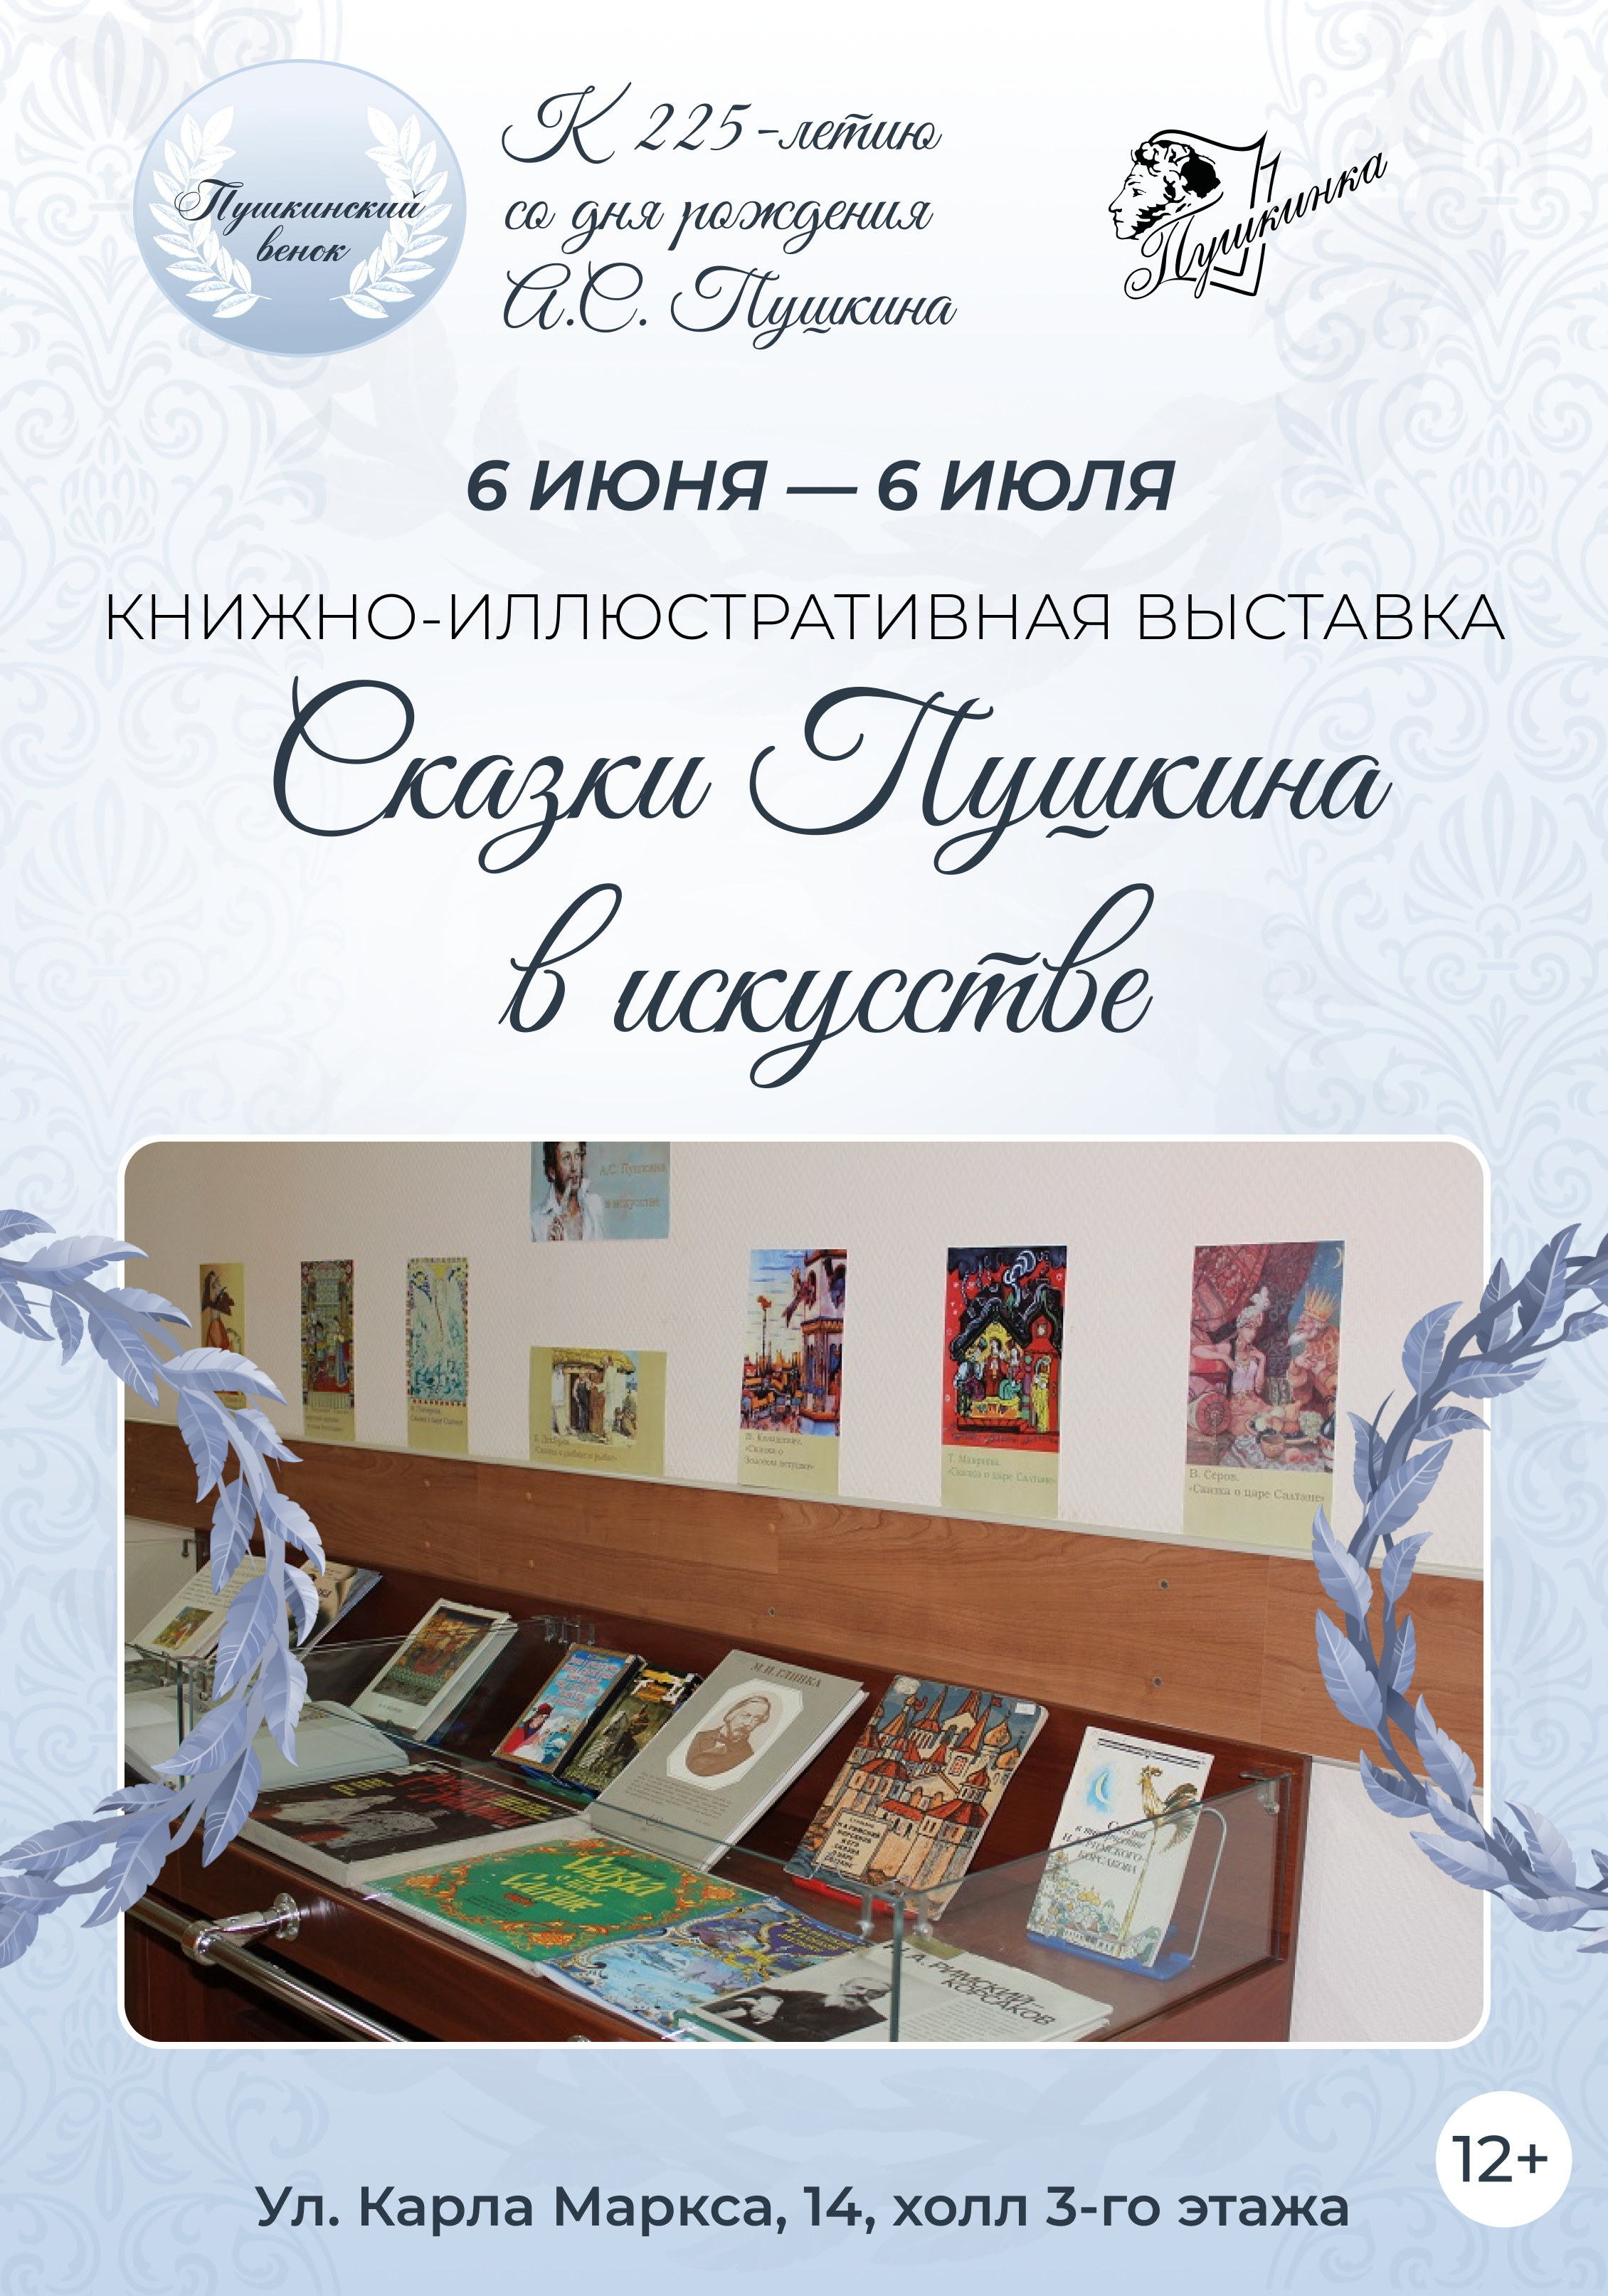 Выставка «Сказки Пушкина в искусстве» (12+)